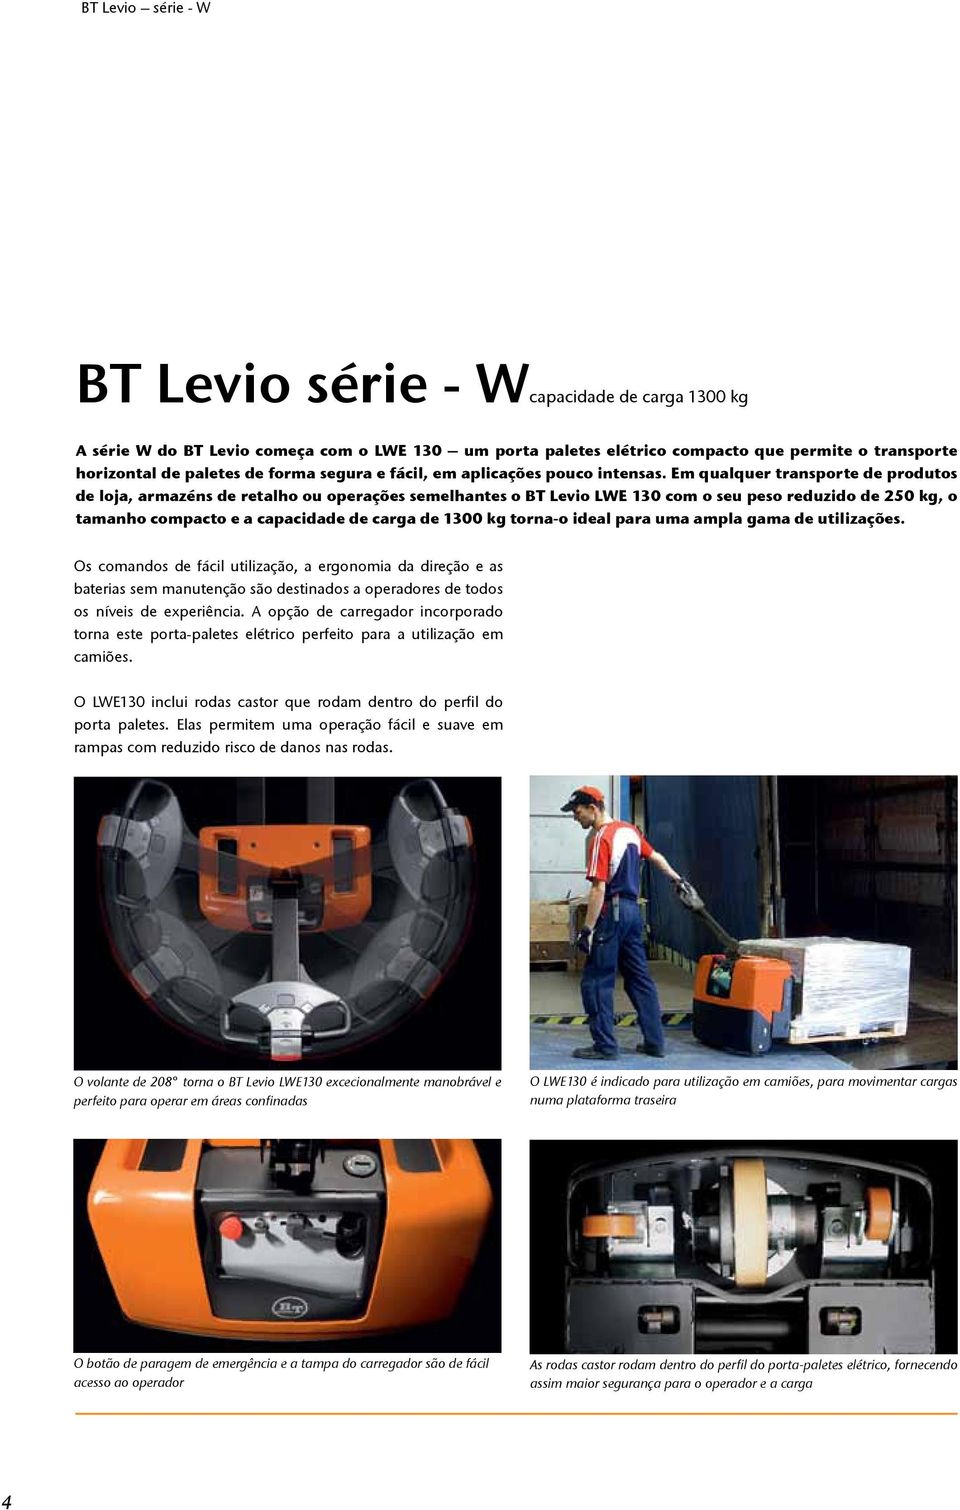 Em qualquer transporte de produtos de loja, armazéns de retalho ou operações semelhantes o BT Levio LWE 130 com o seu peso reduzido de 250 kg, o tamanho compacto e a capacidade de carga de 1300 kg